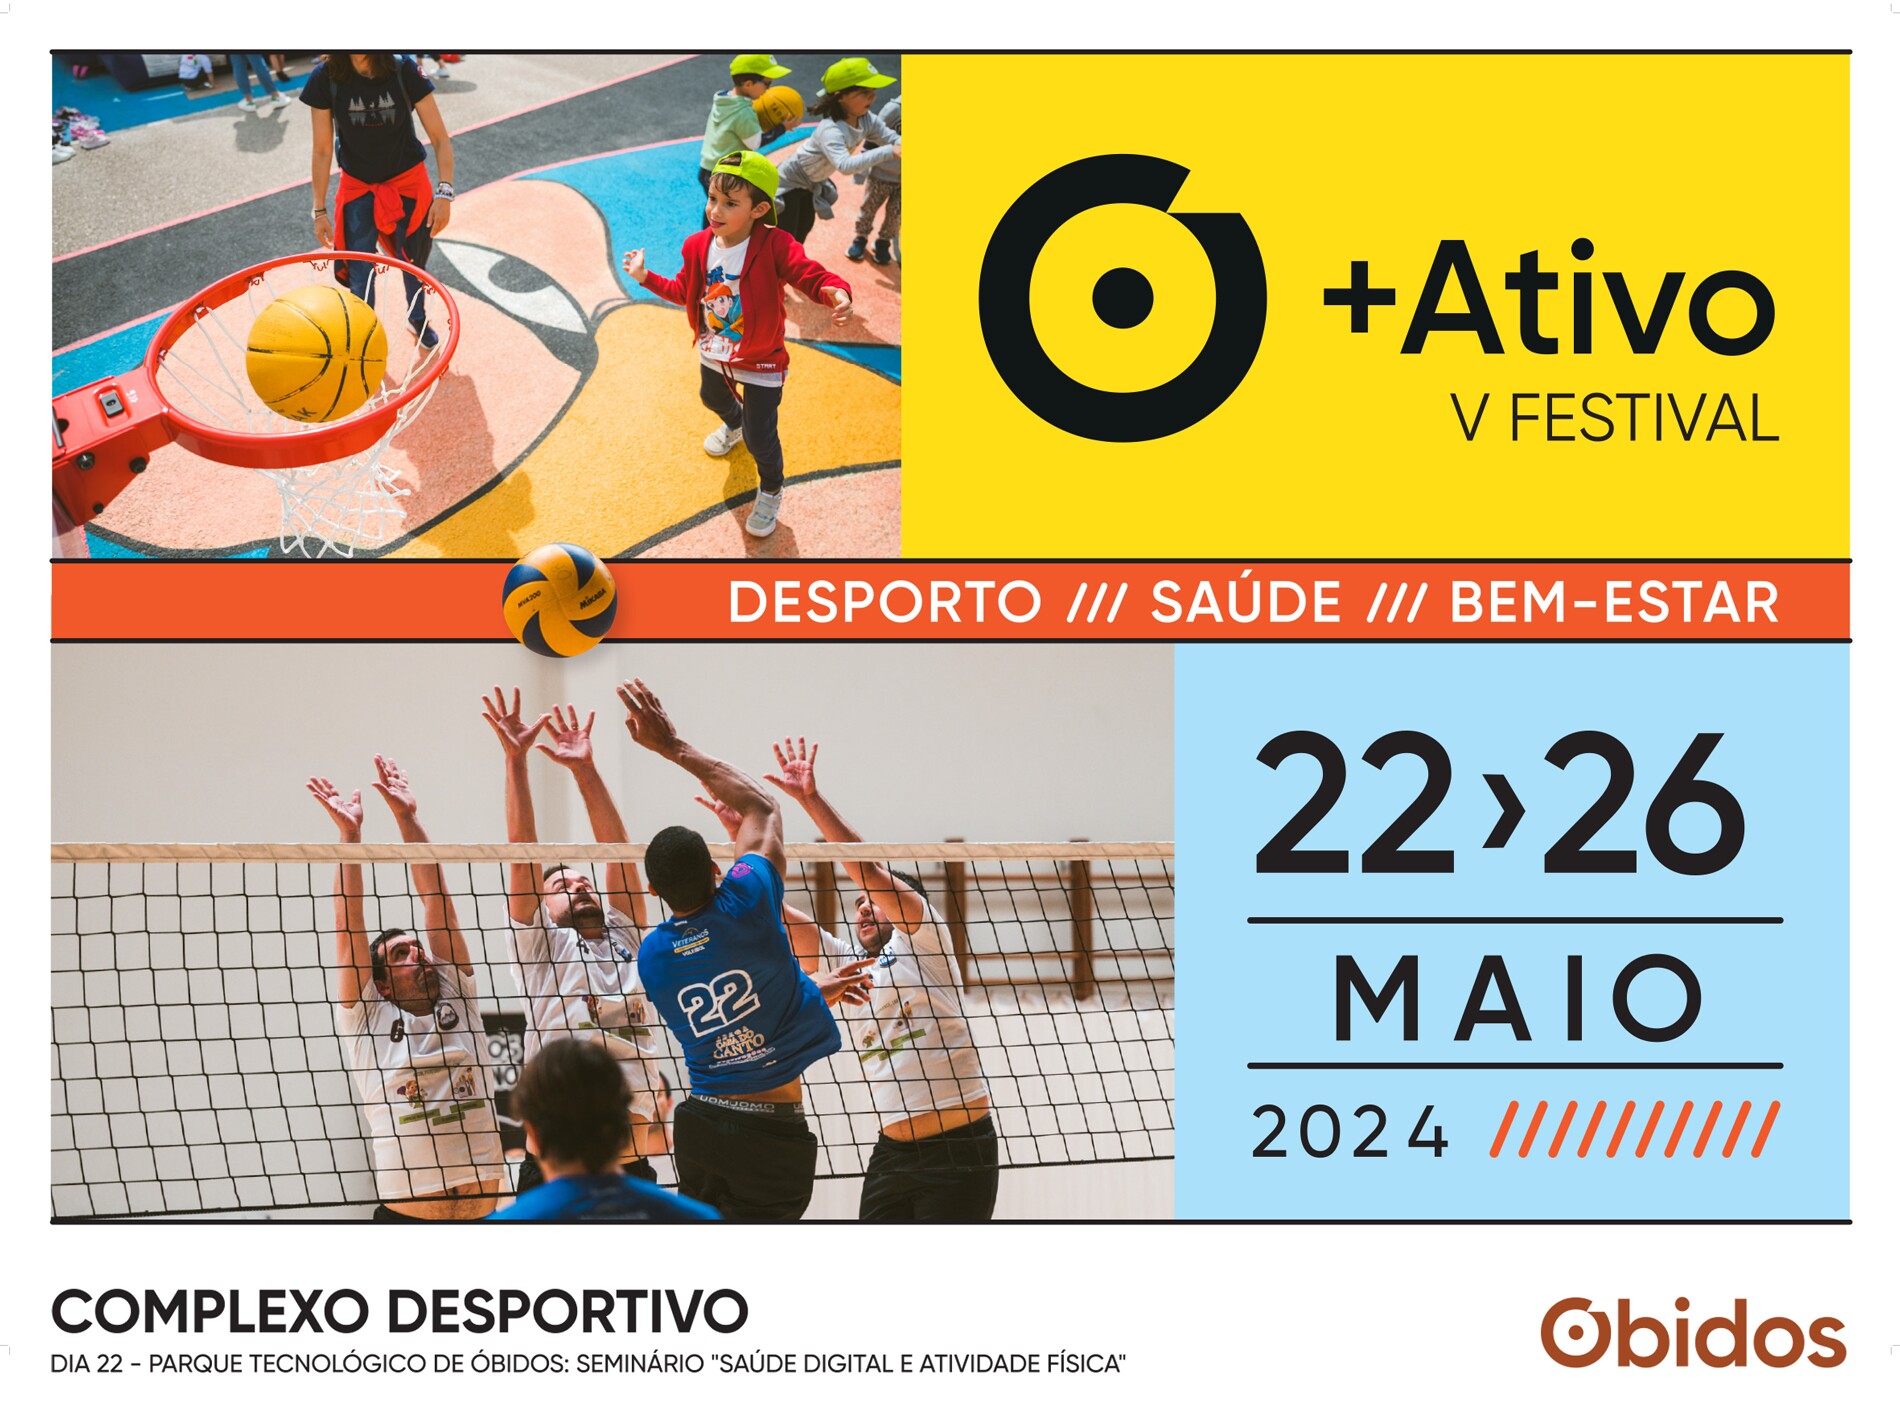 Festival Óbidos + Ativo junta desporto, saúde e bem-estar